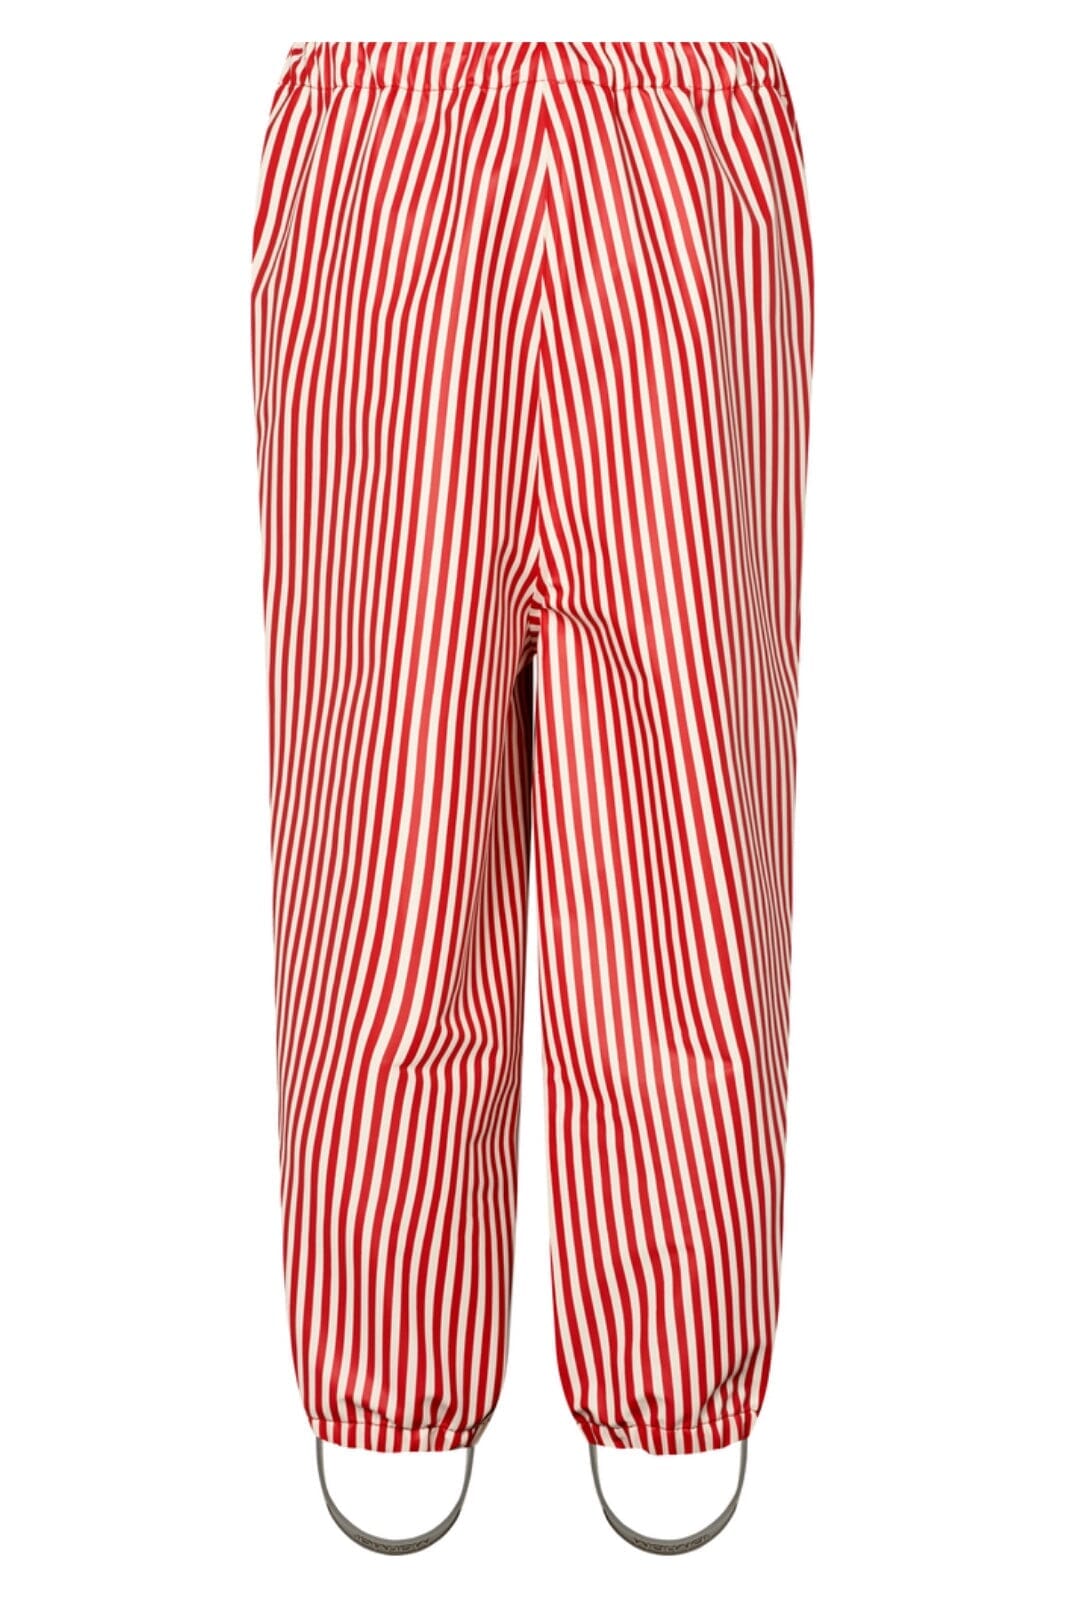 MarMar - Rainwear Set Osmund - Red Dew Stripe 1537 Regntøj 